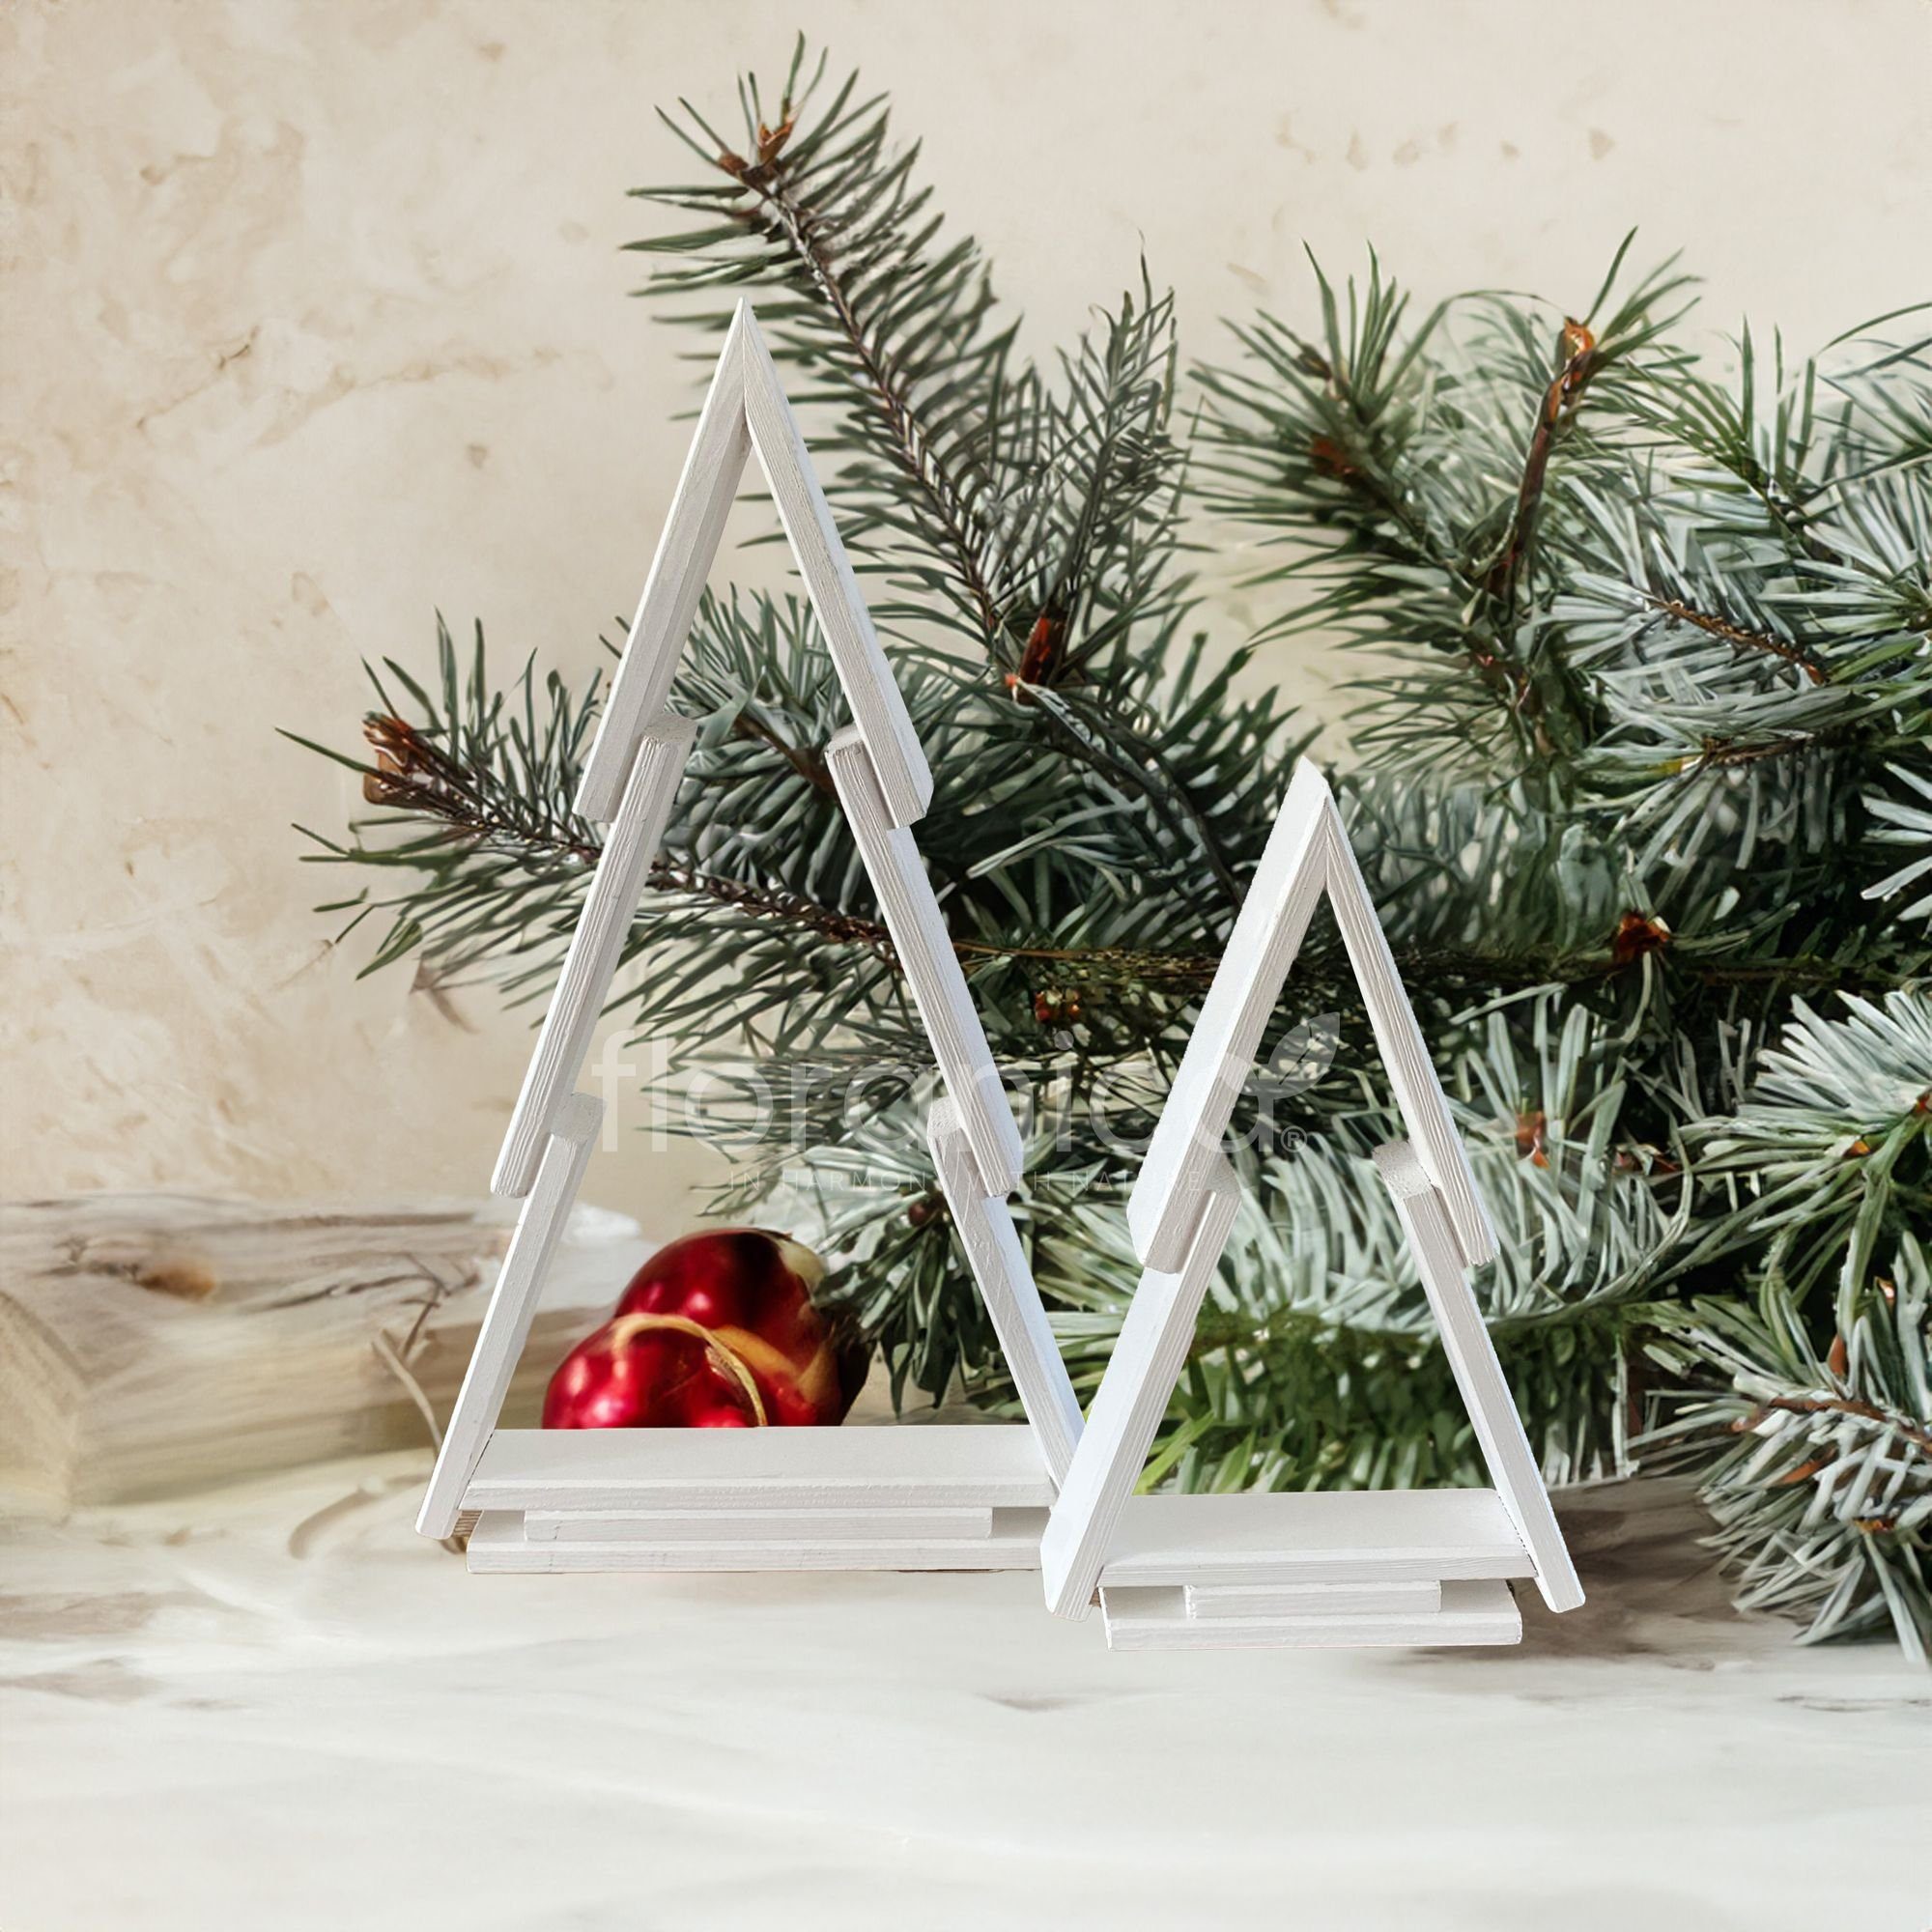 Kiefernholz Weiß St), Weihnachtsbaum Hängedekoration Farbe: Floranica (2 Weihnachtsdeko